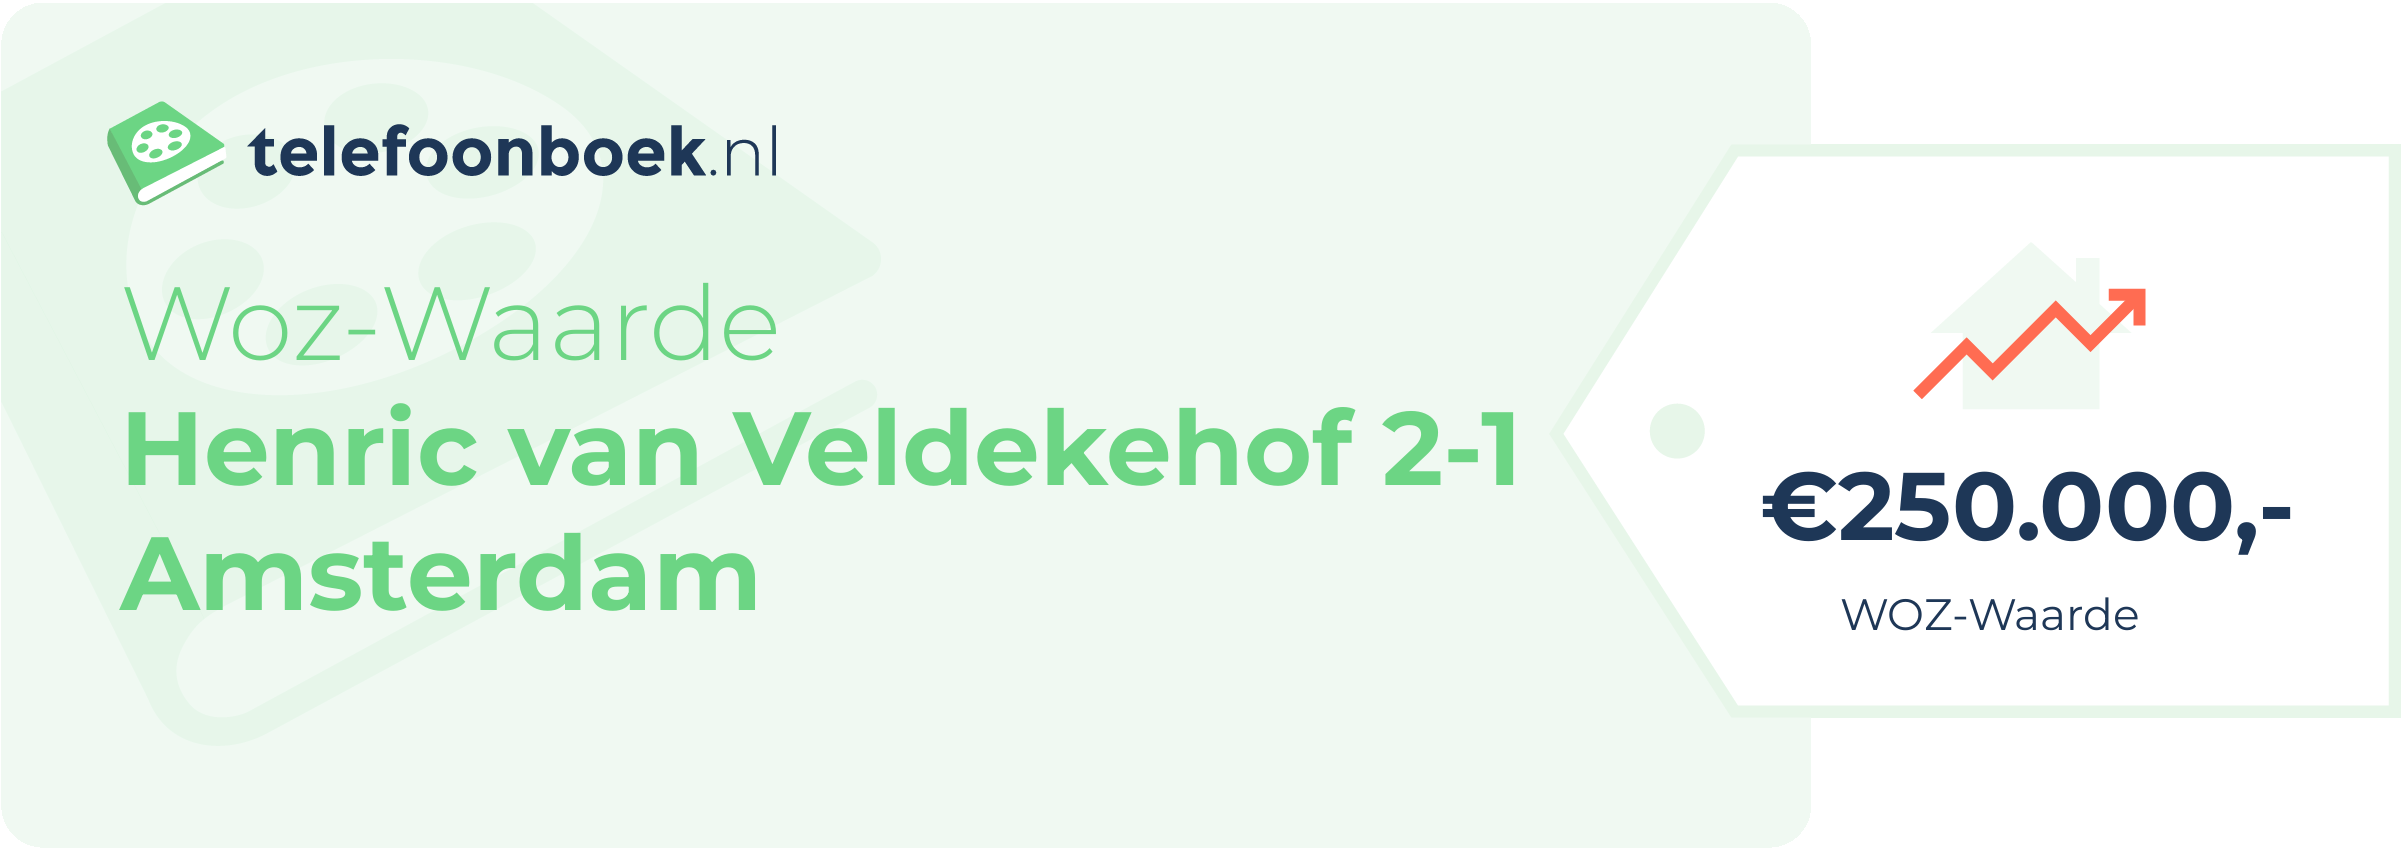 WOZ-waarde Henric Van Veldekehof 2-1 Amsterdam